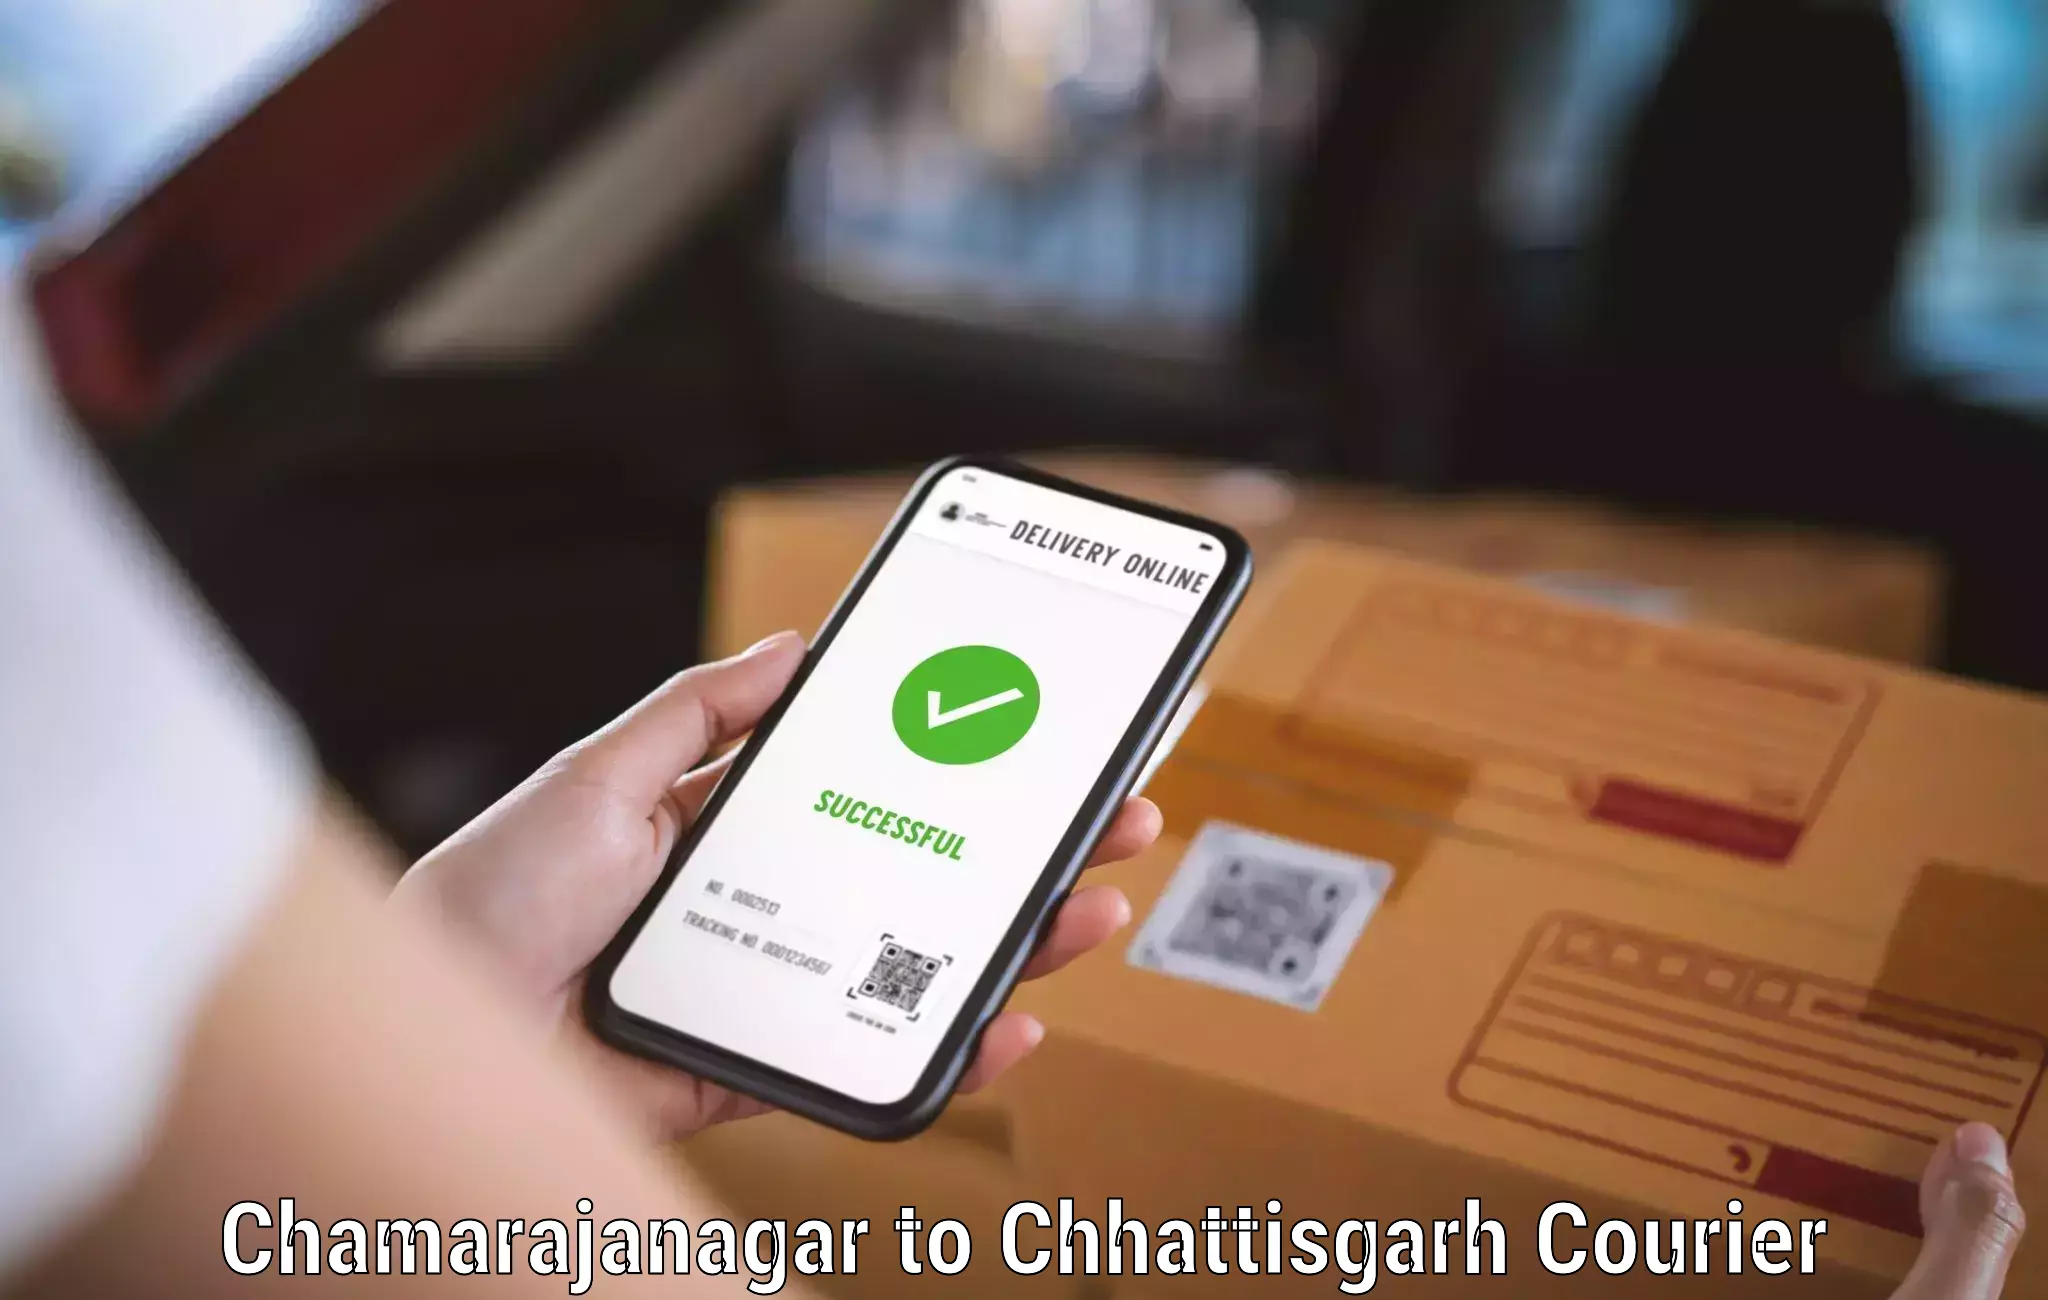 Global logistics network Chamarajanagar to Shivrinarayan